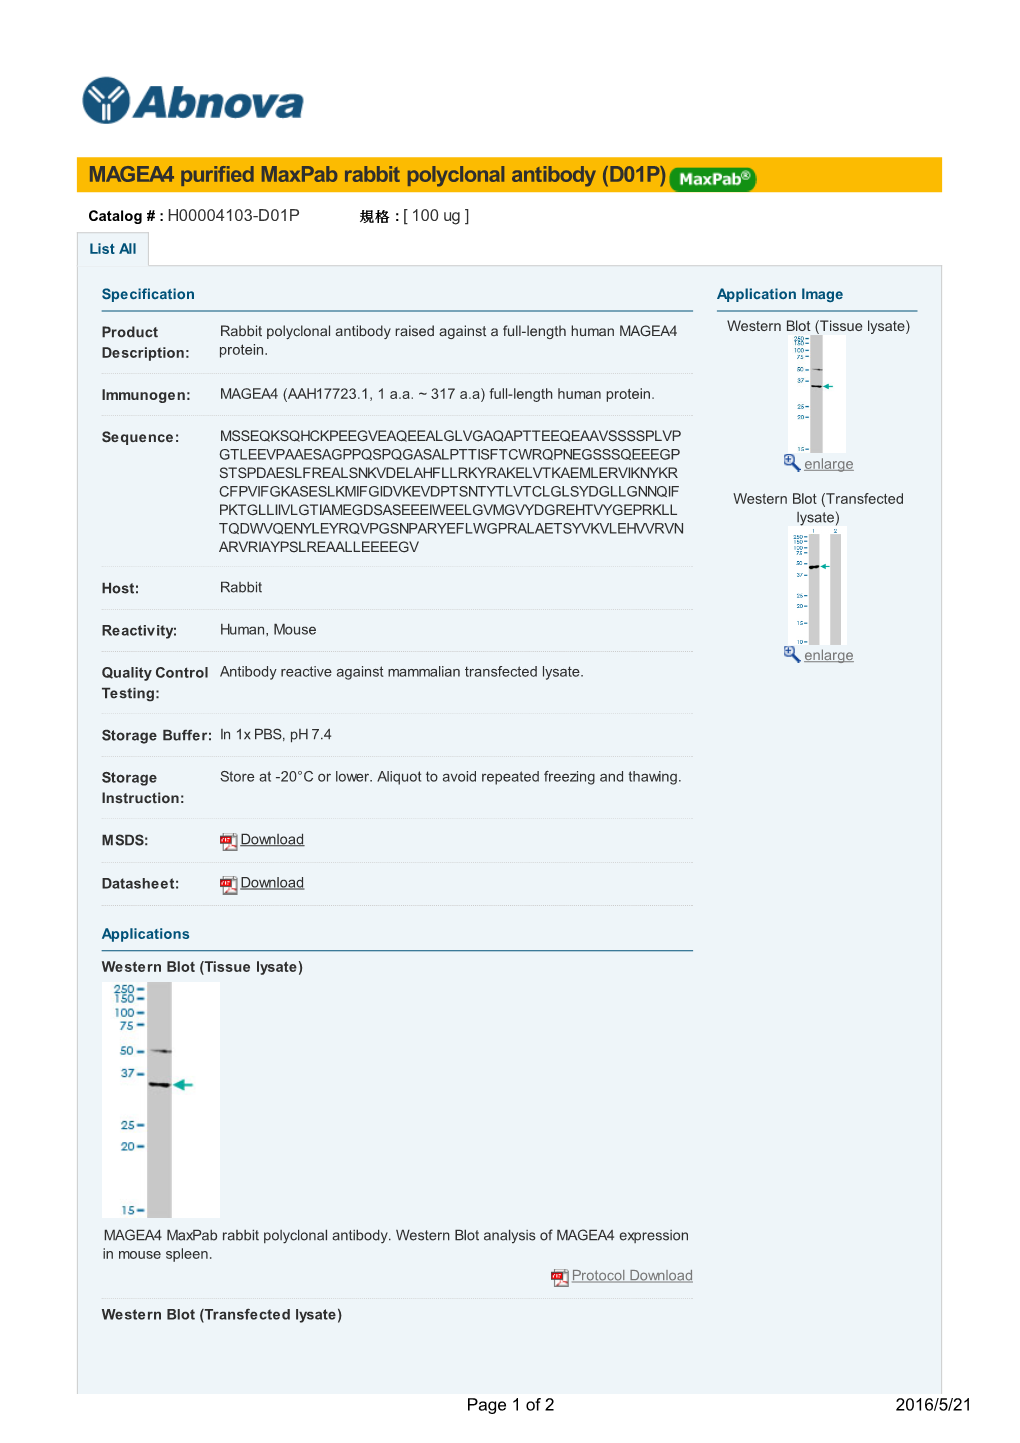 MAGEA4 Purified Maxpab Rabbit Polyclonal Antibody (D01P)